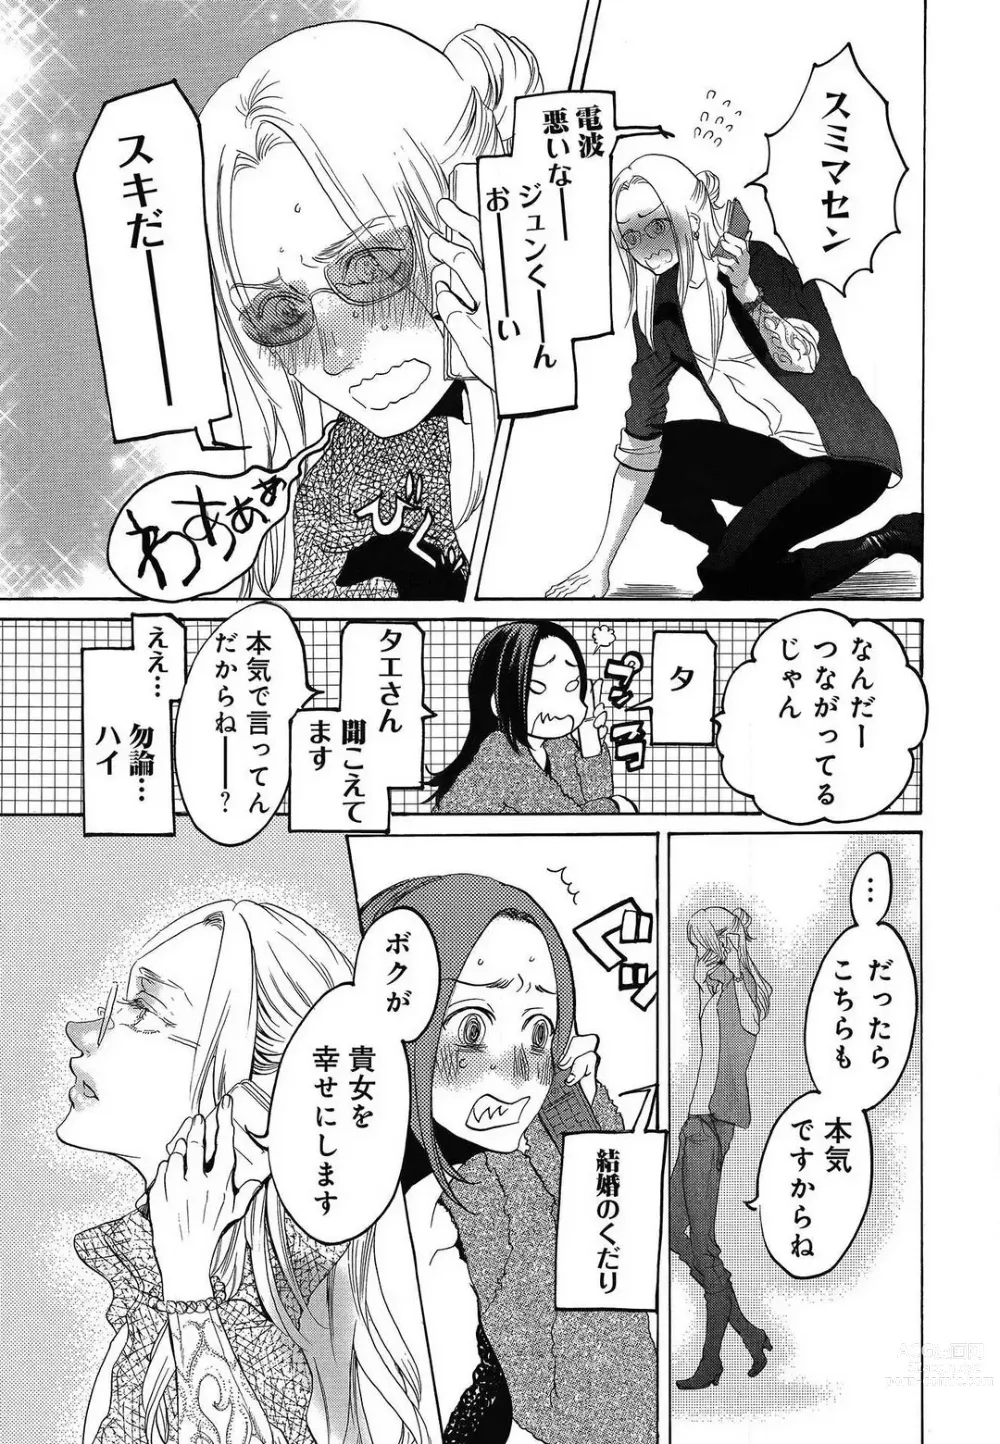 Page 475 of manga Kizutsukeru you ni Aishiaimashou 1-10